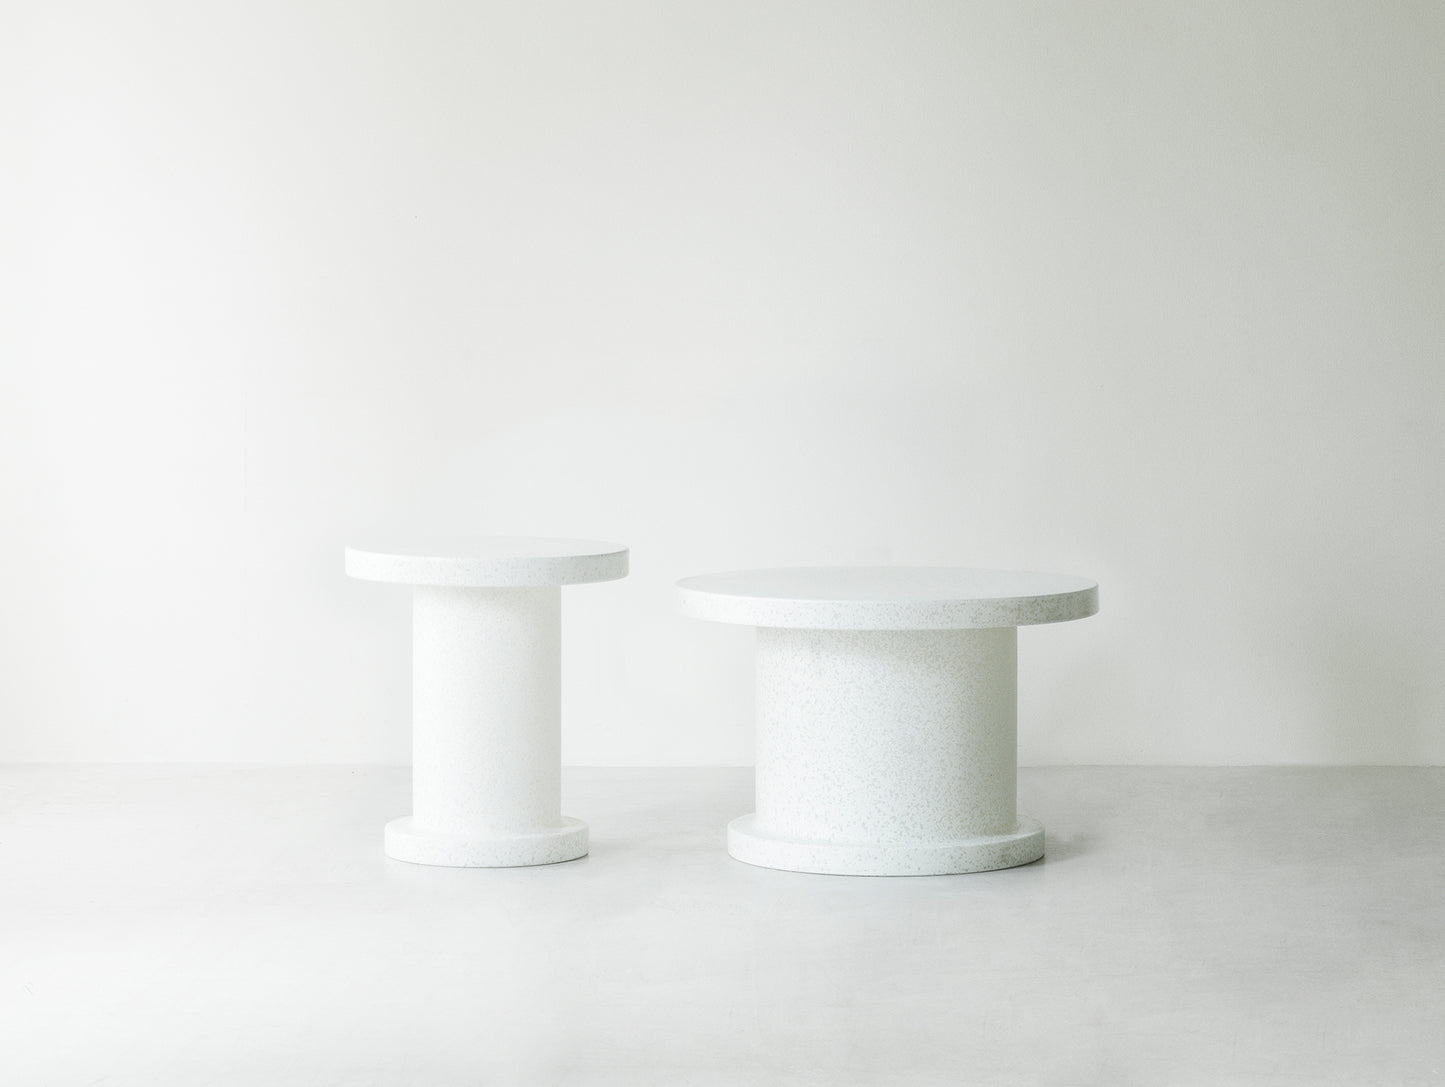 Bit Coffee Table by Normann Copenhagen - White